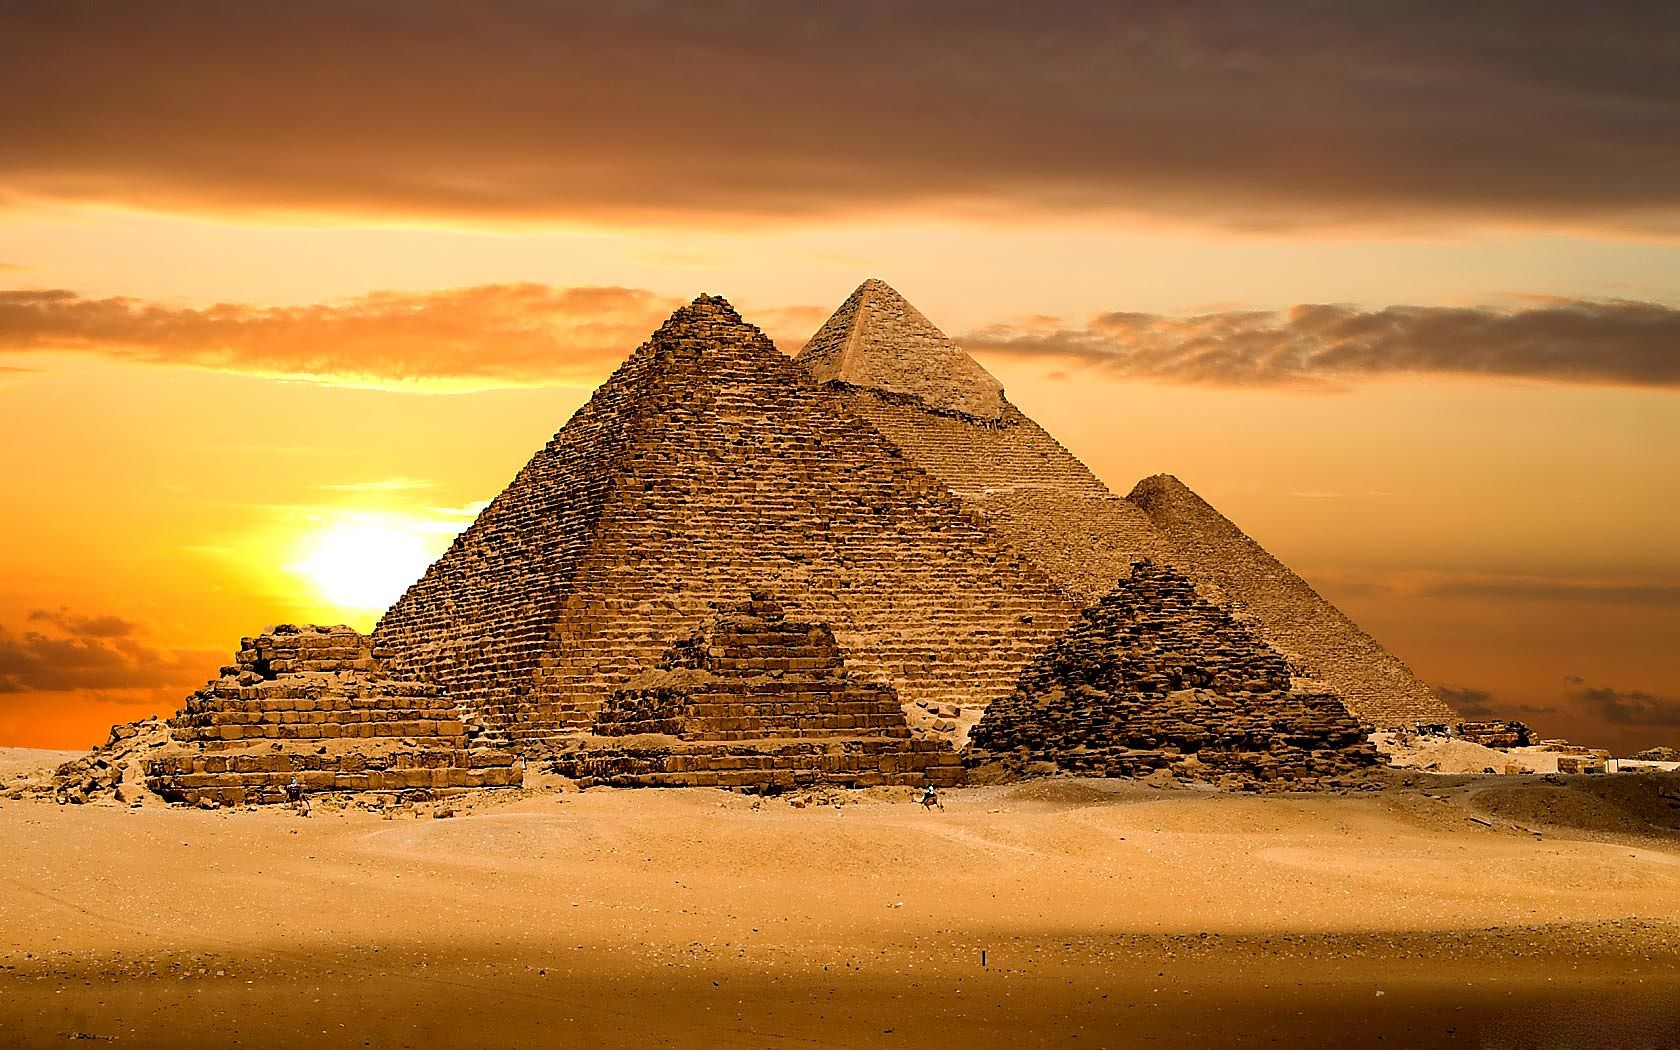 صور وخلفيات لأهرامات الجيزة وأبو الهول Pyramids of Giza and the Sphinx 3110